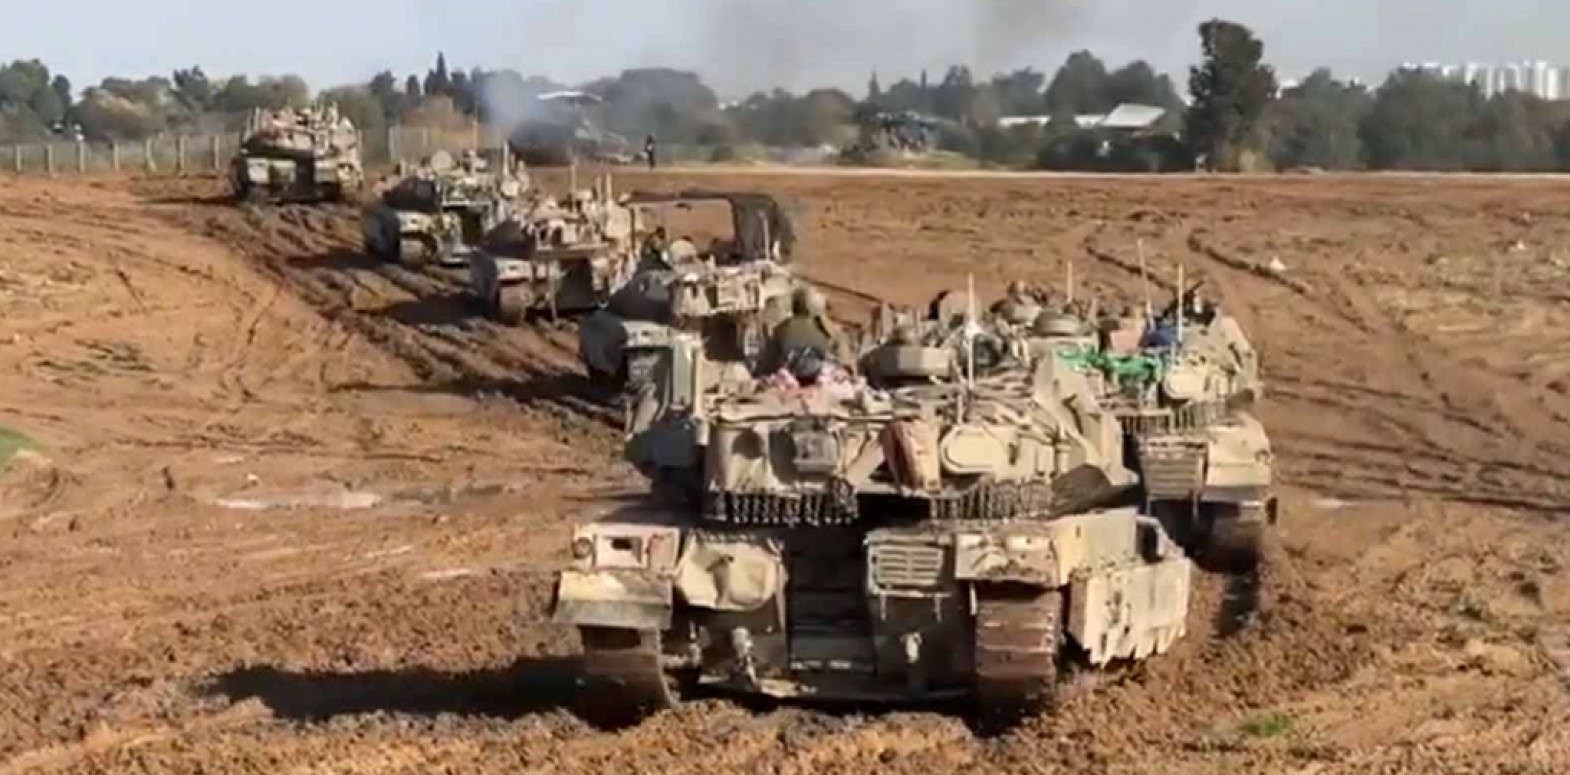 الفيديو قديم وليس لتحرك دبابات إسرائيلية نحو رفح حديثاً